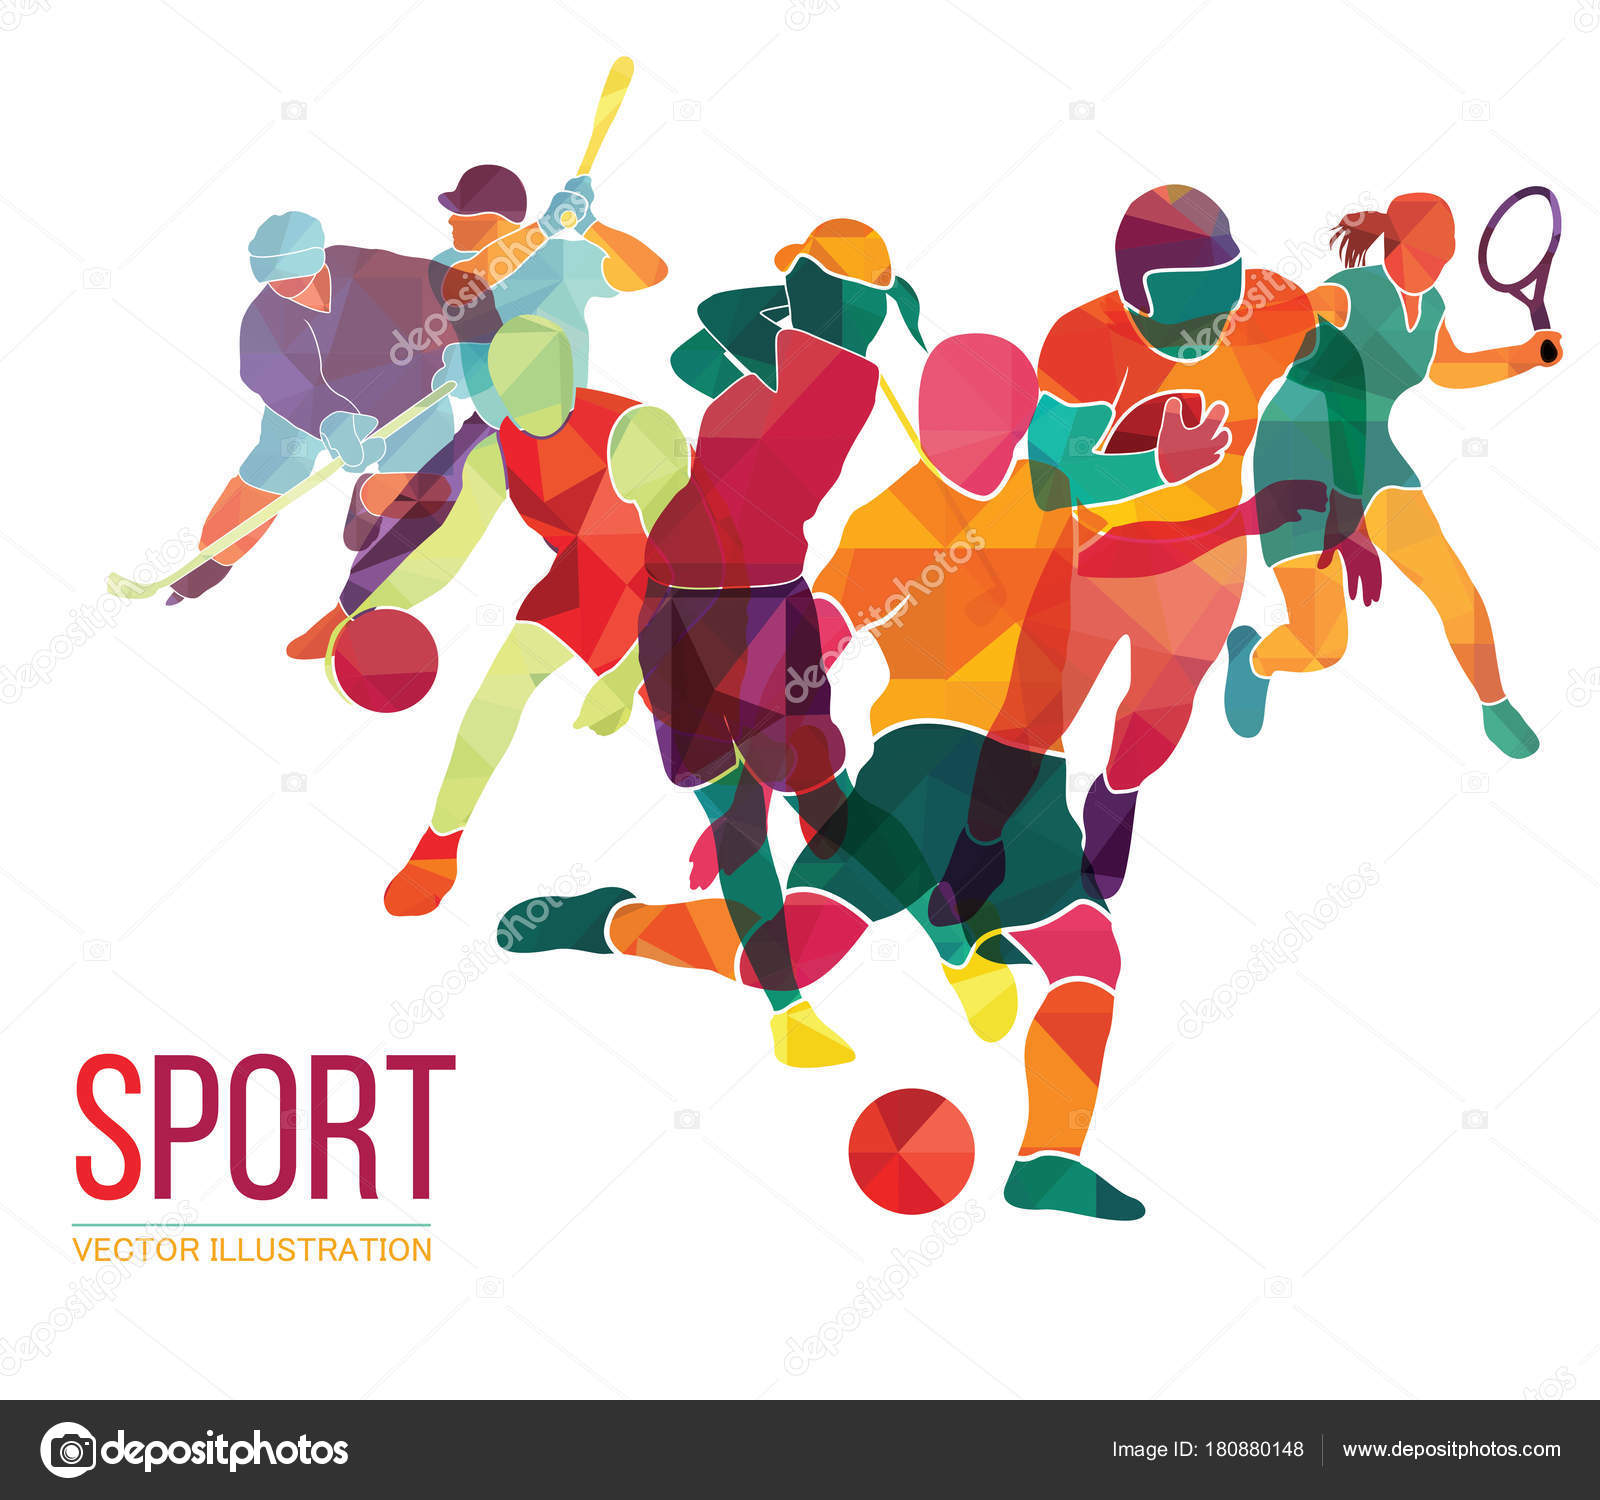 Các hình ảnh vector nền thể thao này đầy cuốn hút và táo bạo, mang lại cảm giác phấn khích và năng động cho bạn. Hãy xem các hình ảnh này để cảm nhận được sức mạnh của môn thể thao và truyền cảm hứng cho ngày của bạn.